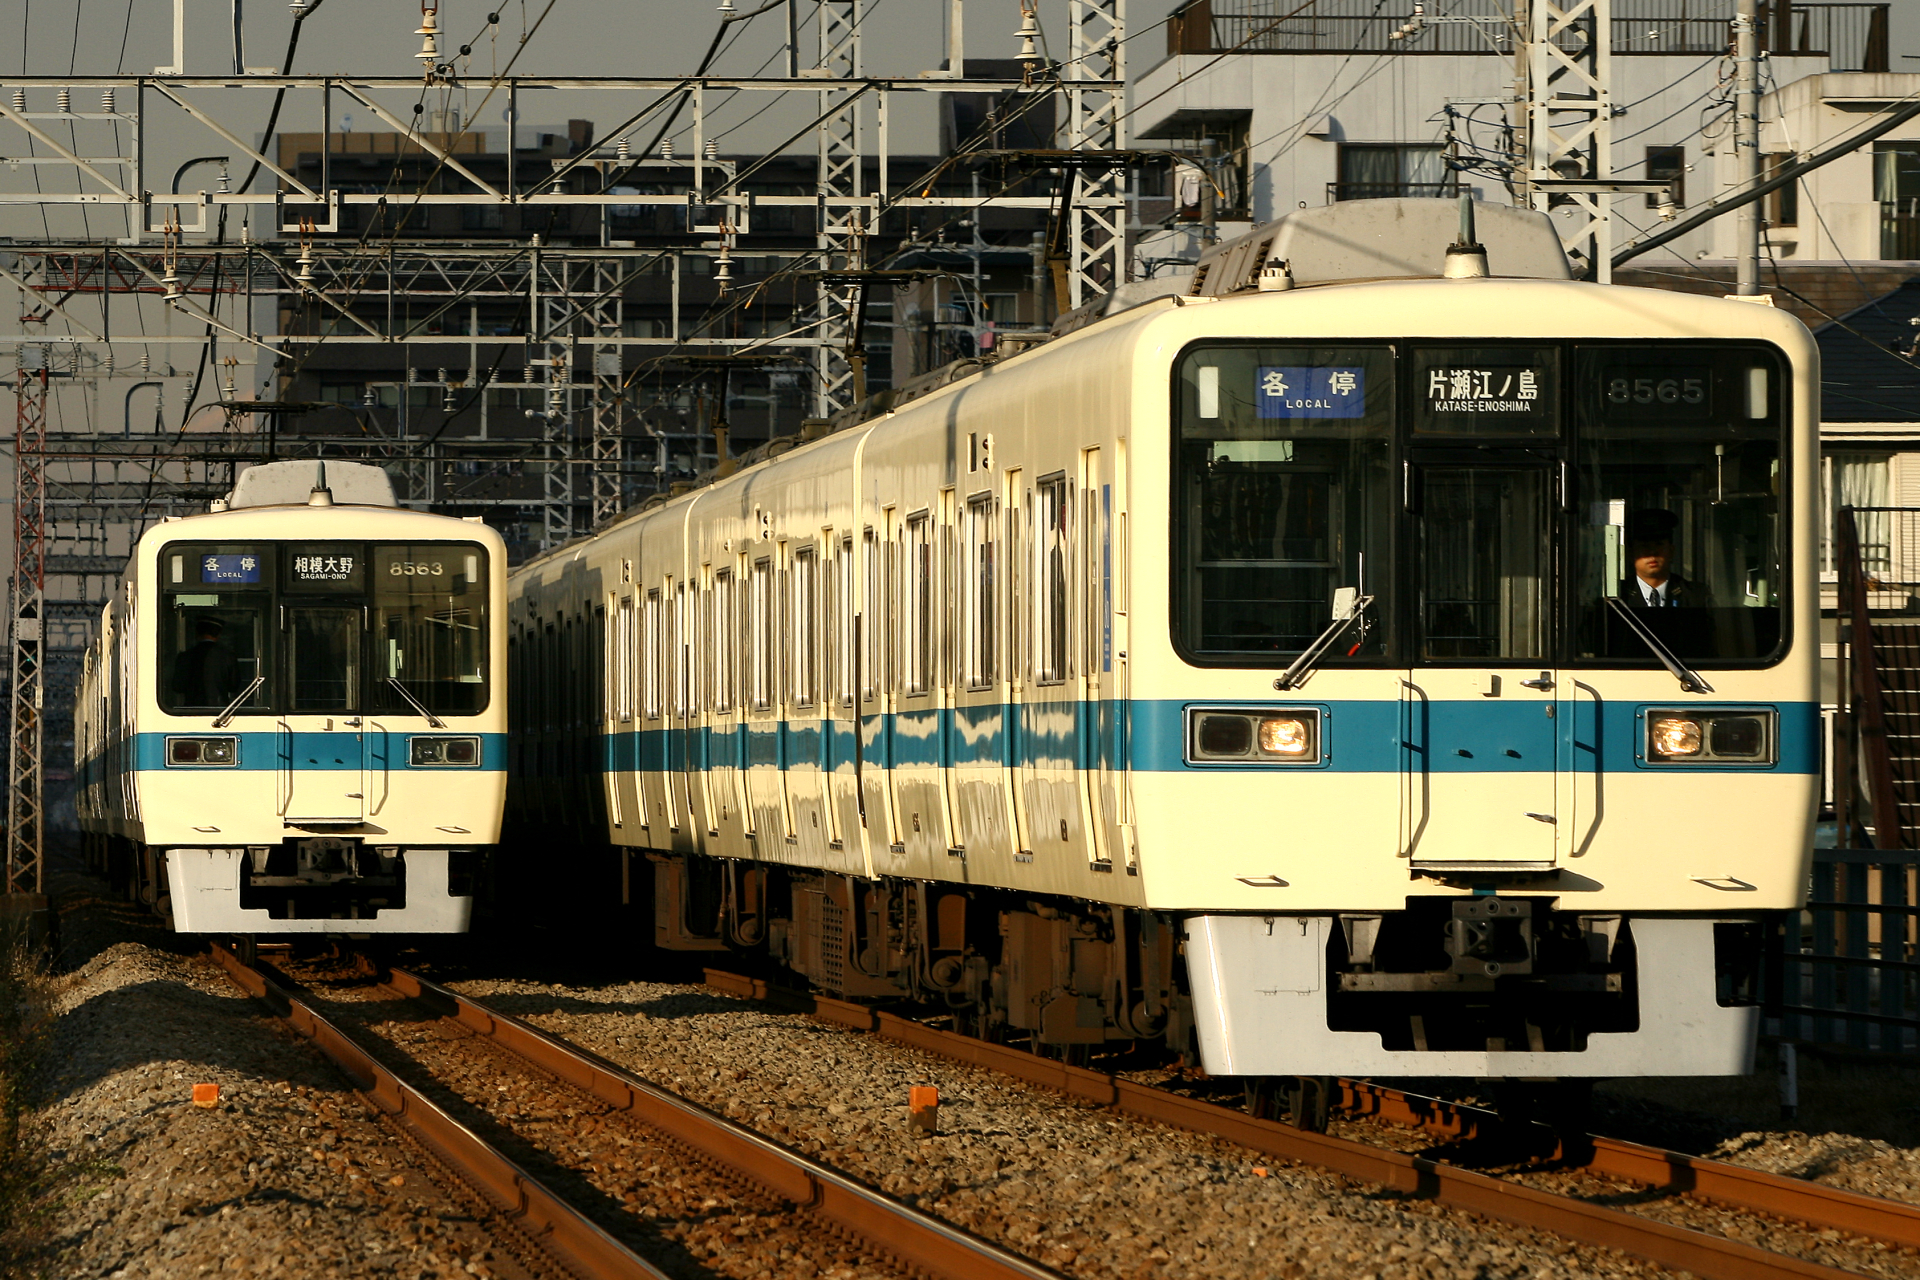 小田急8000形未更新車が並ぶ奇跡の瞬間 Odapedia 小田急を中心とした鉄道に関するブログメディア